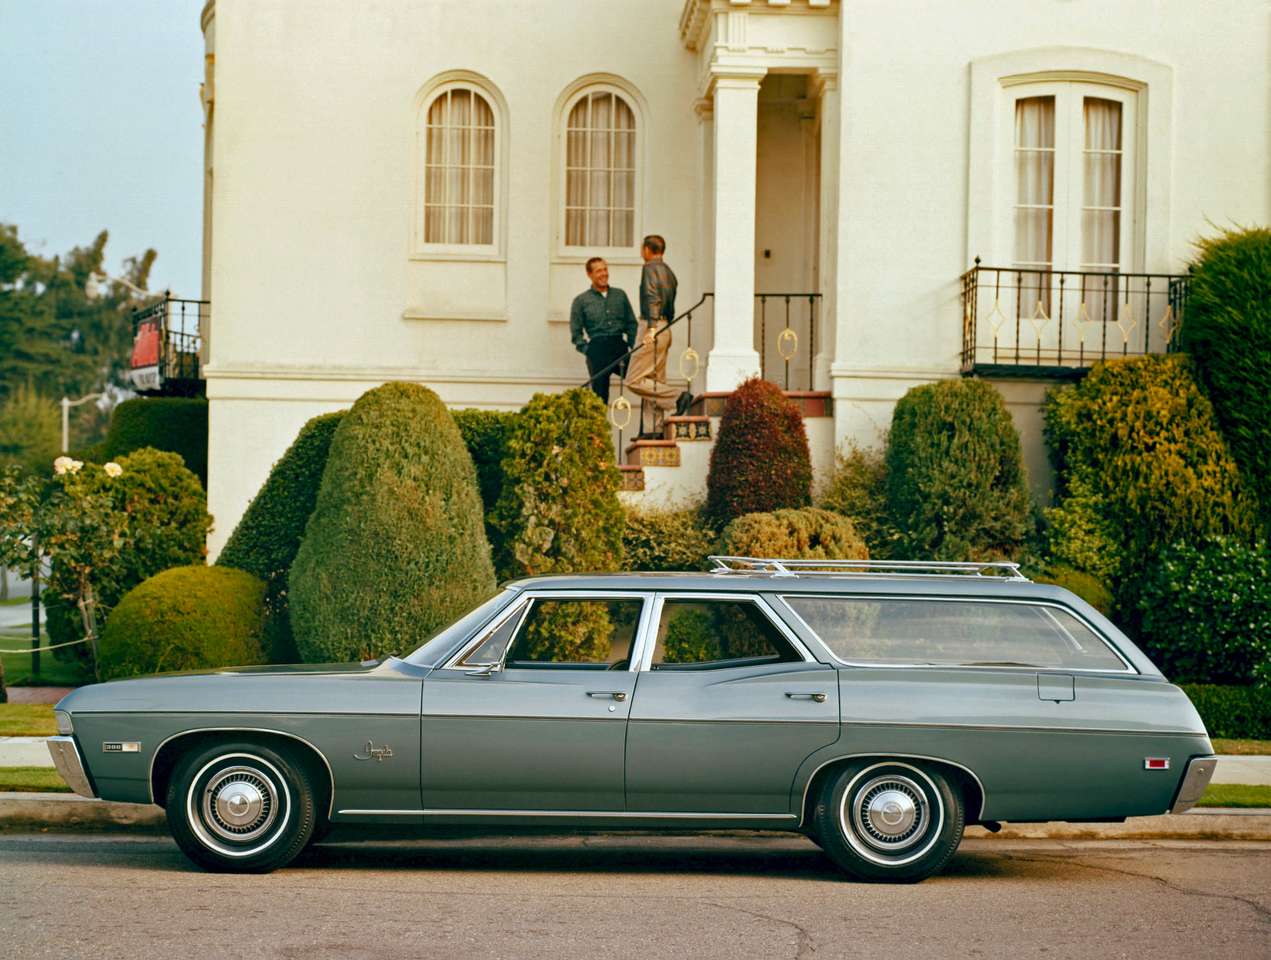 Універсал Chevrolet Impala 1968 року випуску пазл онлайн